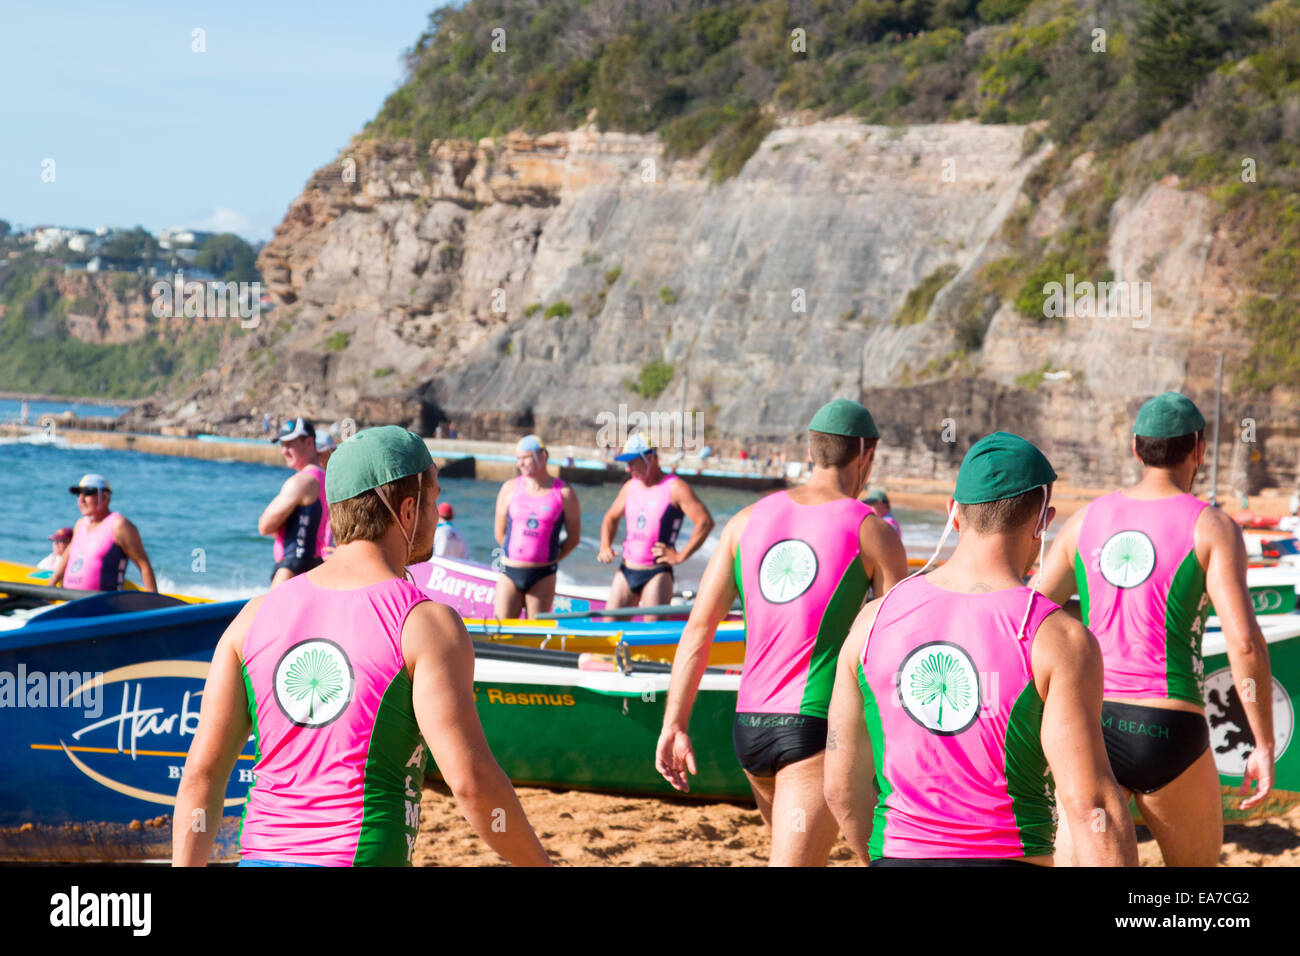 Sydney, Australie. Nov 8, 2014. La concurrence entre les courses d'été surfboat surfclubs situé sur les plages du nord de Sydney commence à Bilgola Beach. L'Australie Crédit : martin berry/Alamy Live News Banque D'Images